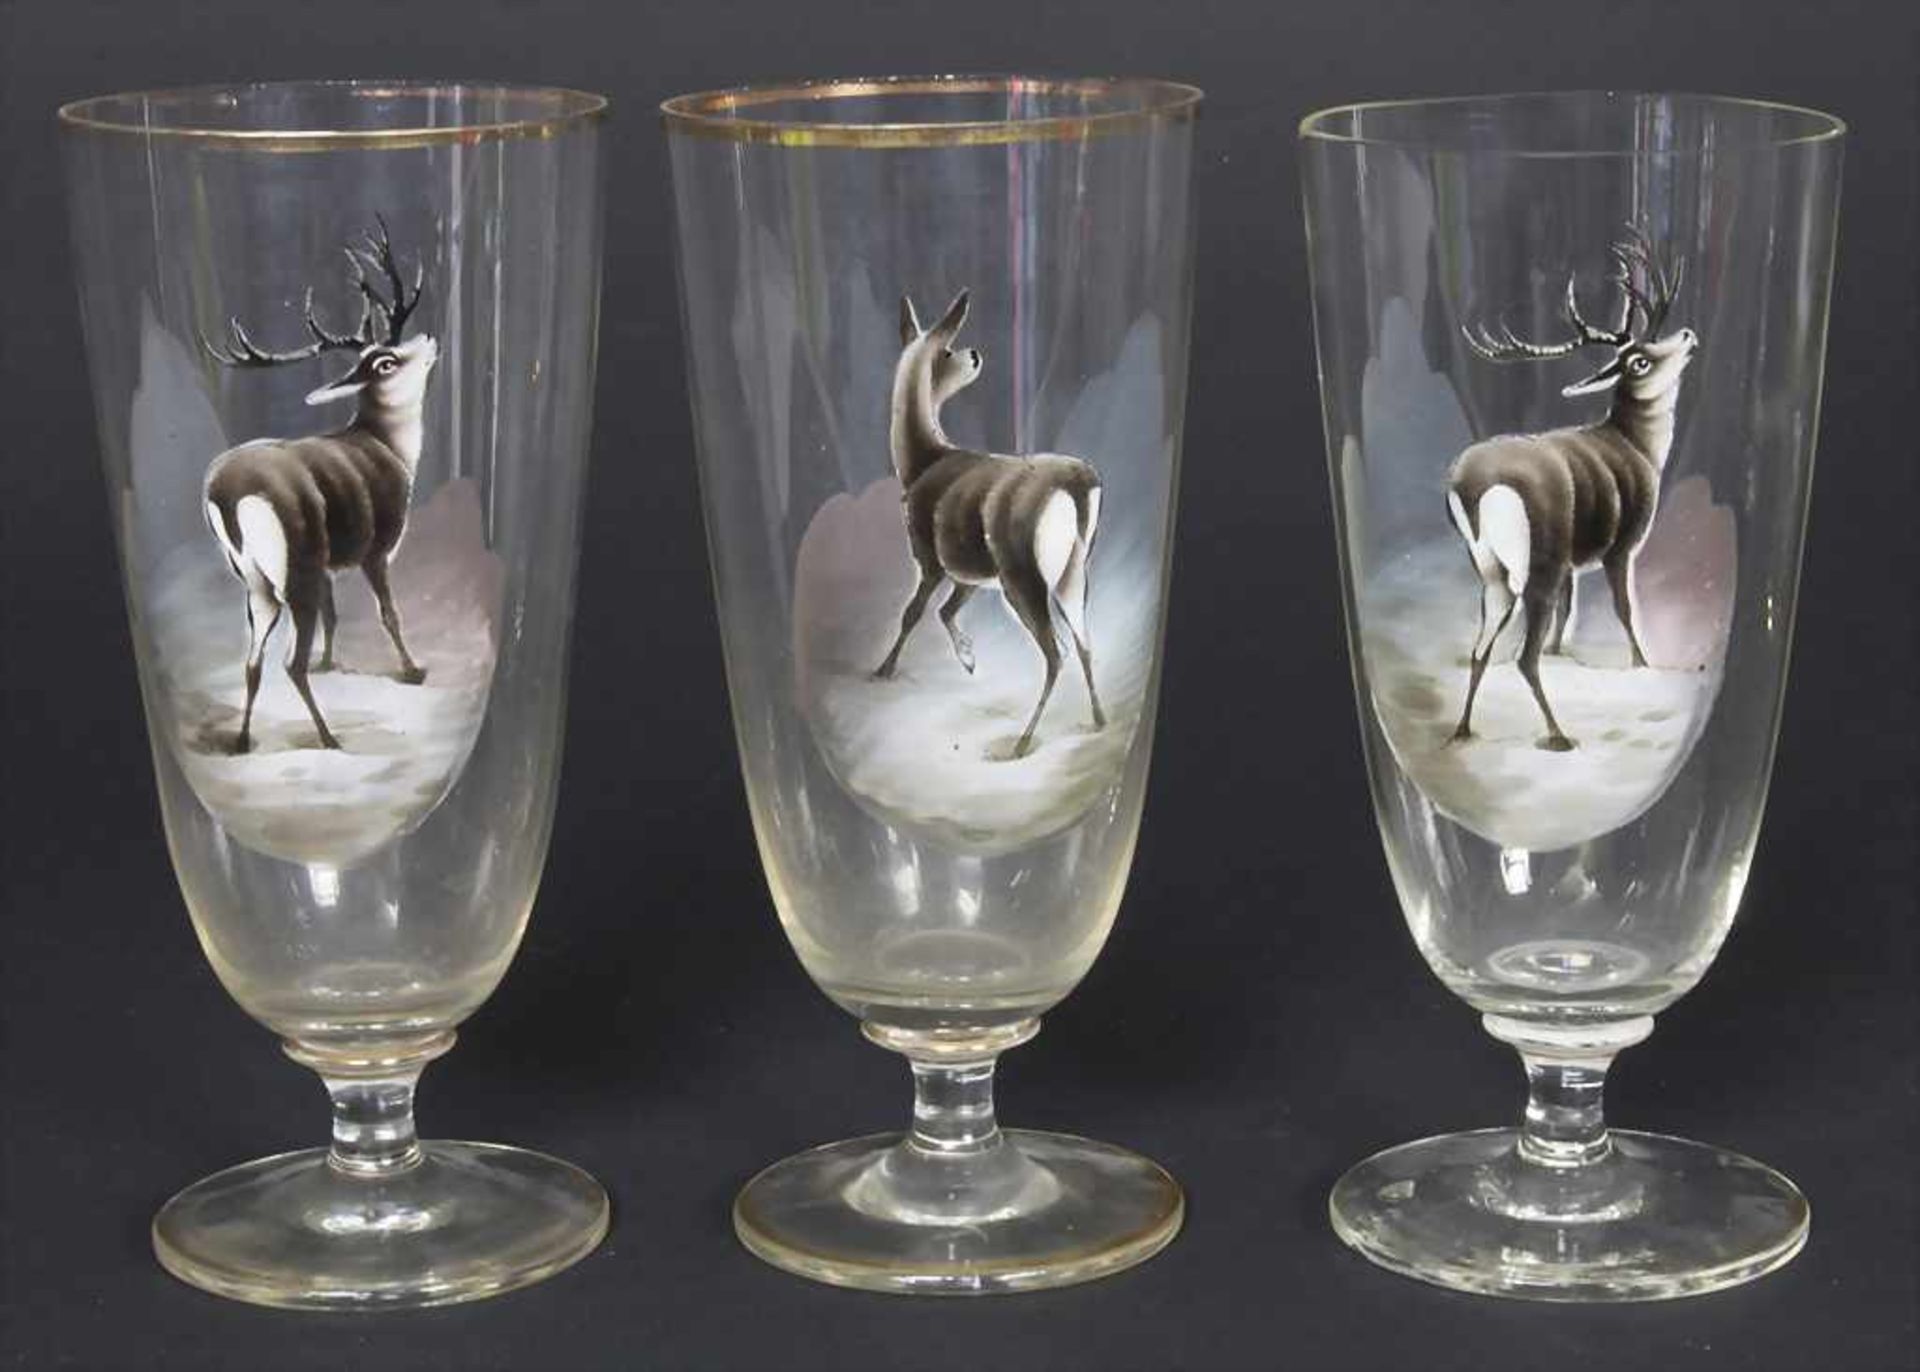 Saftkrug und 6 Gläser mit Hirschmotiven / A decanter and 6 glasses with deer decor, um 1900 - Bild 2 aus 6